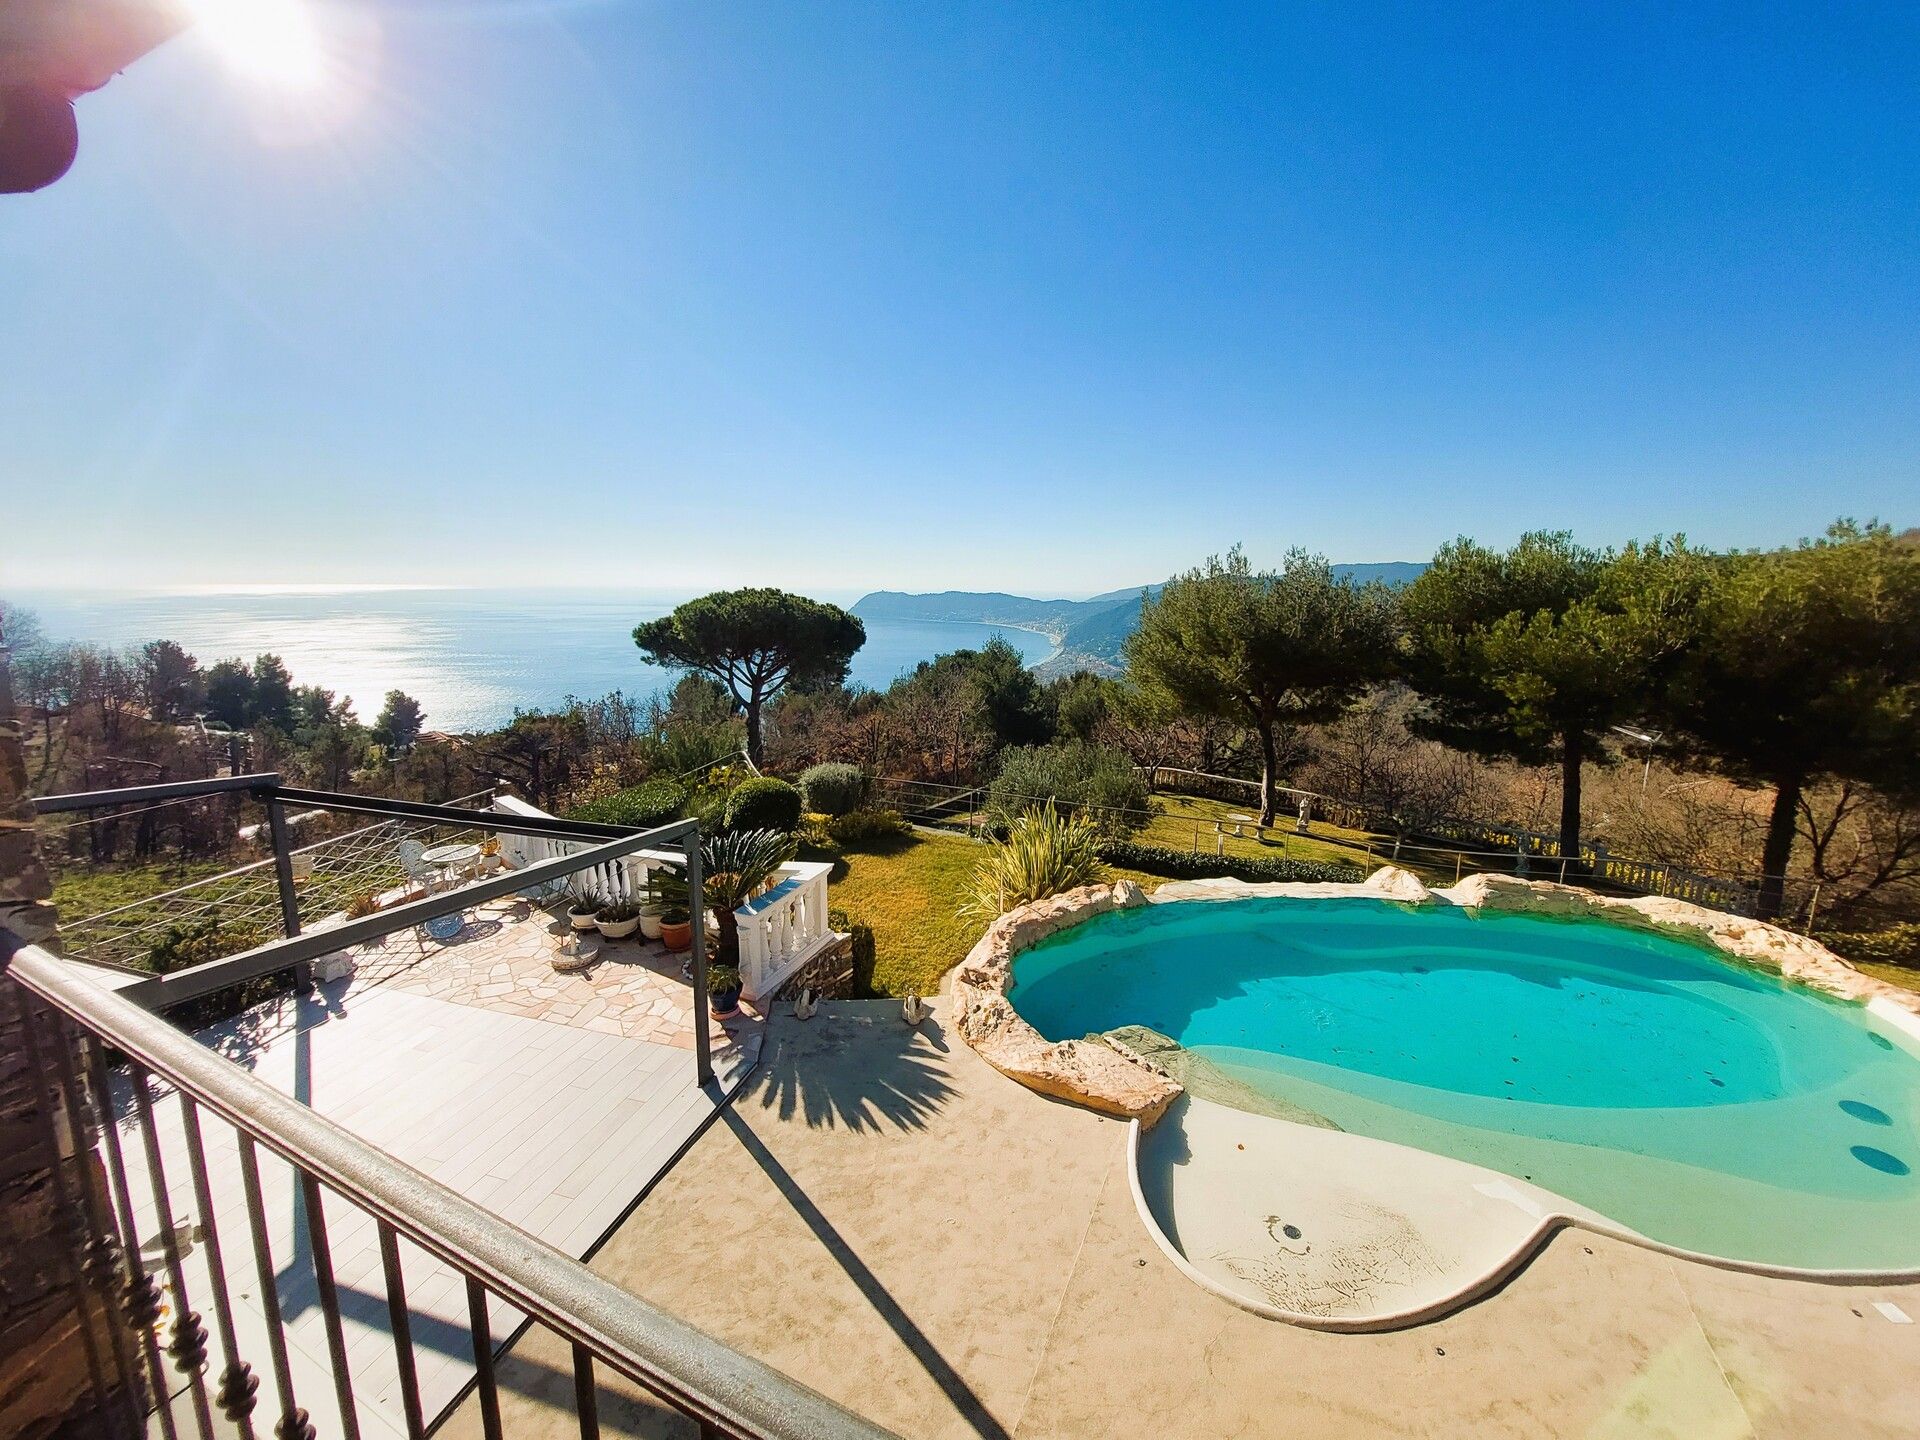 A vendre villa in zone tranquille Alassio Liguria